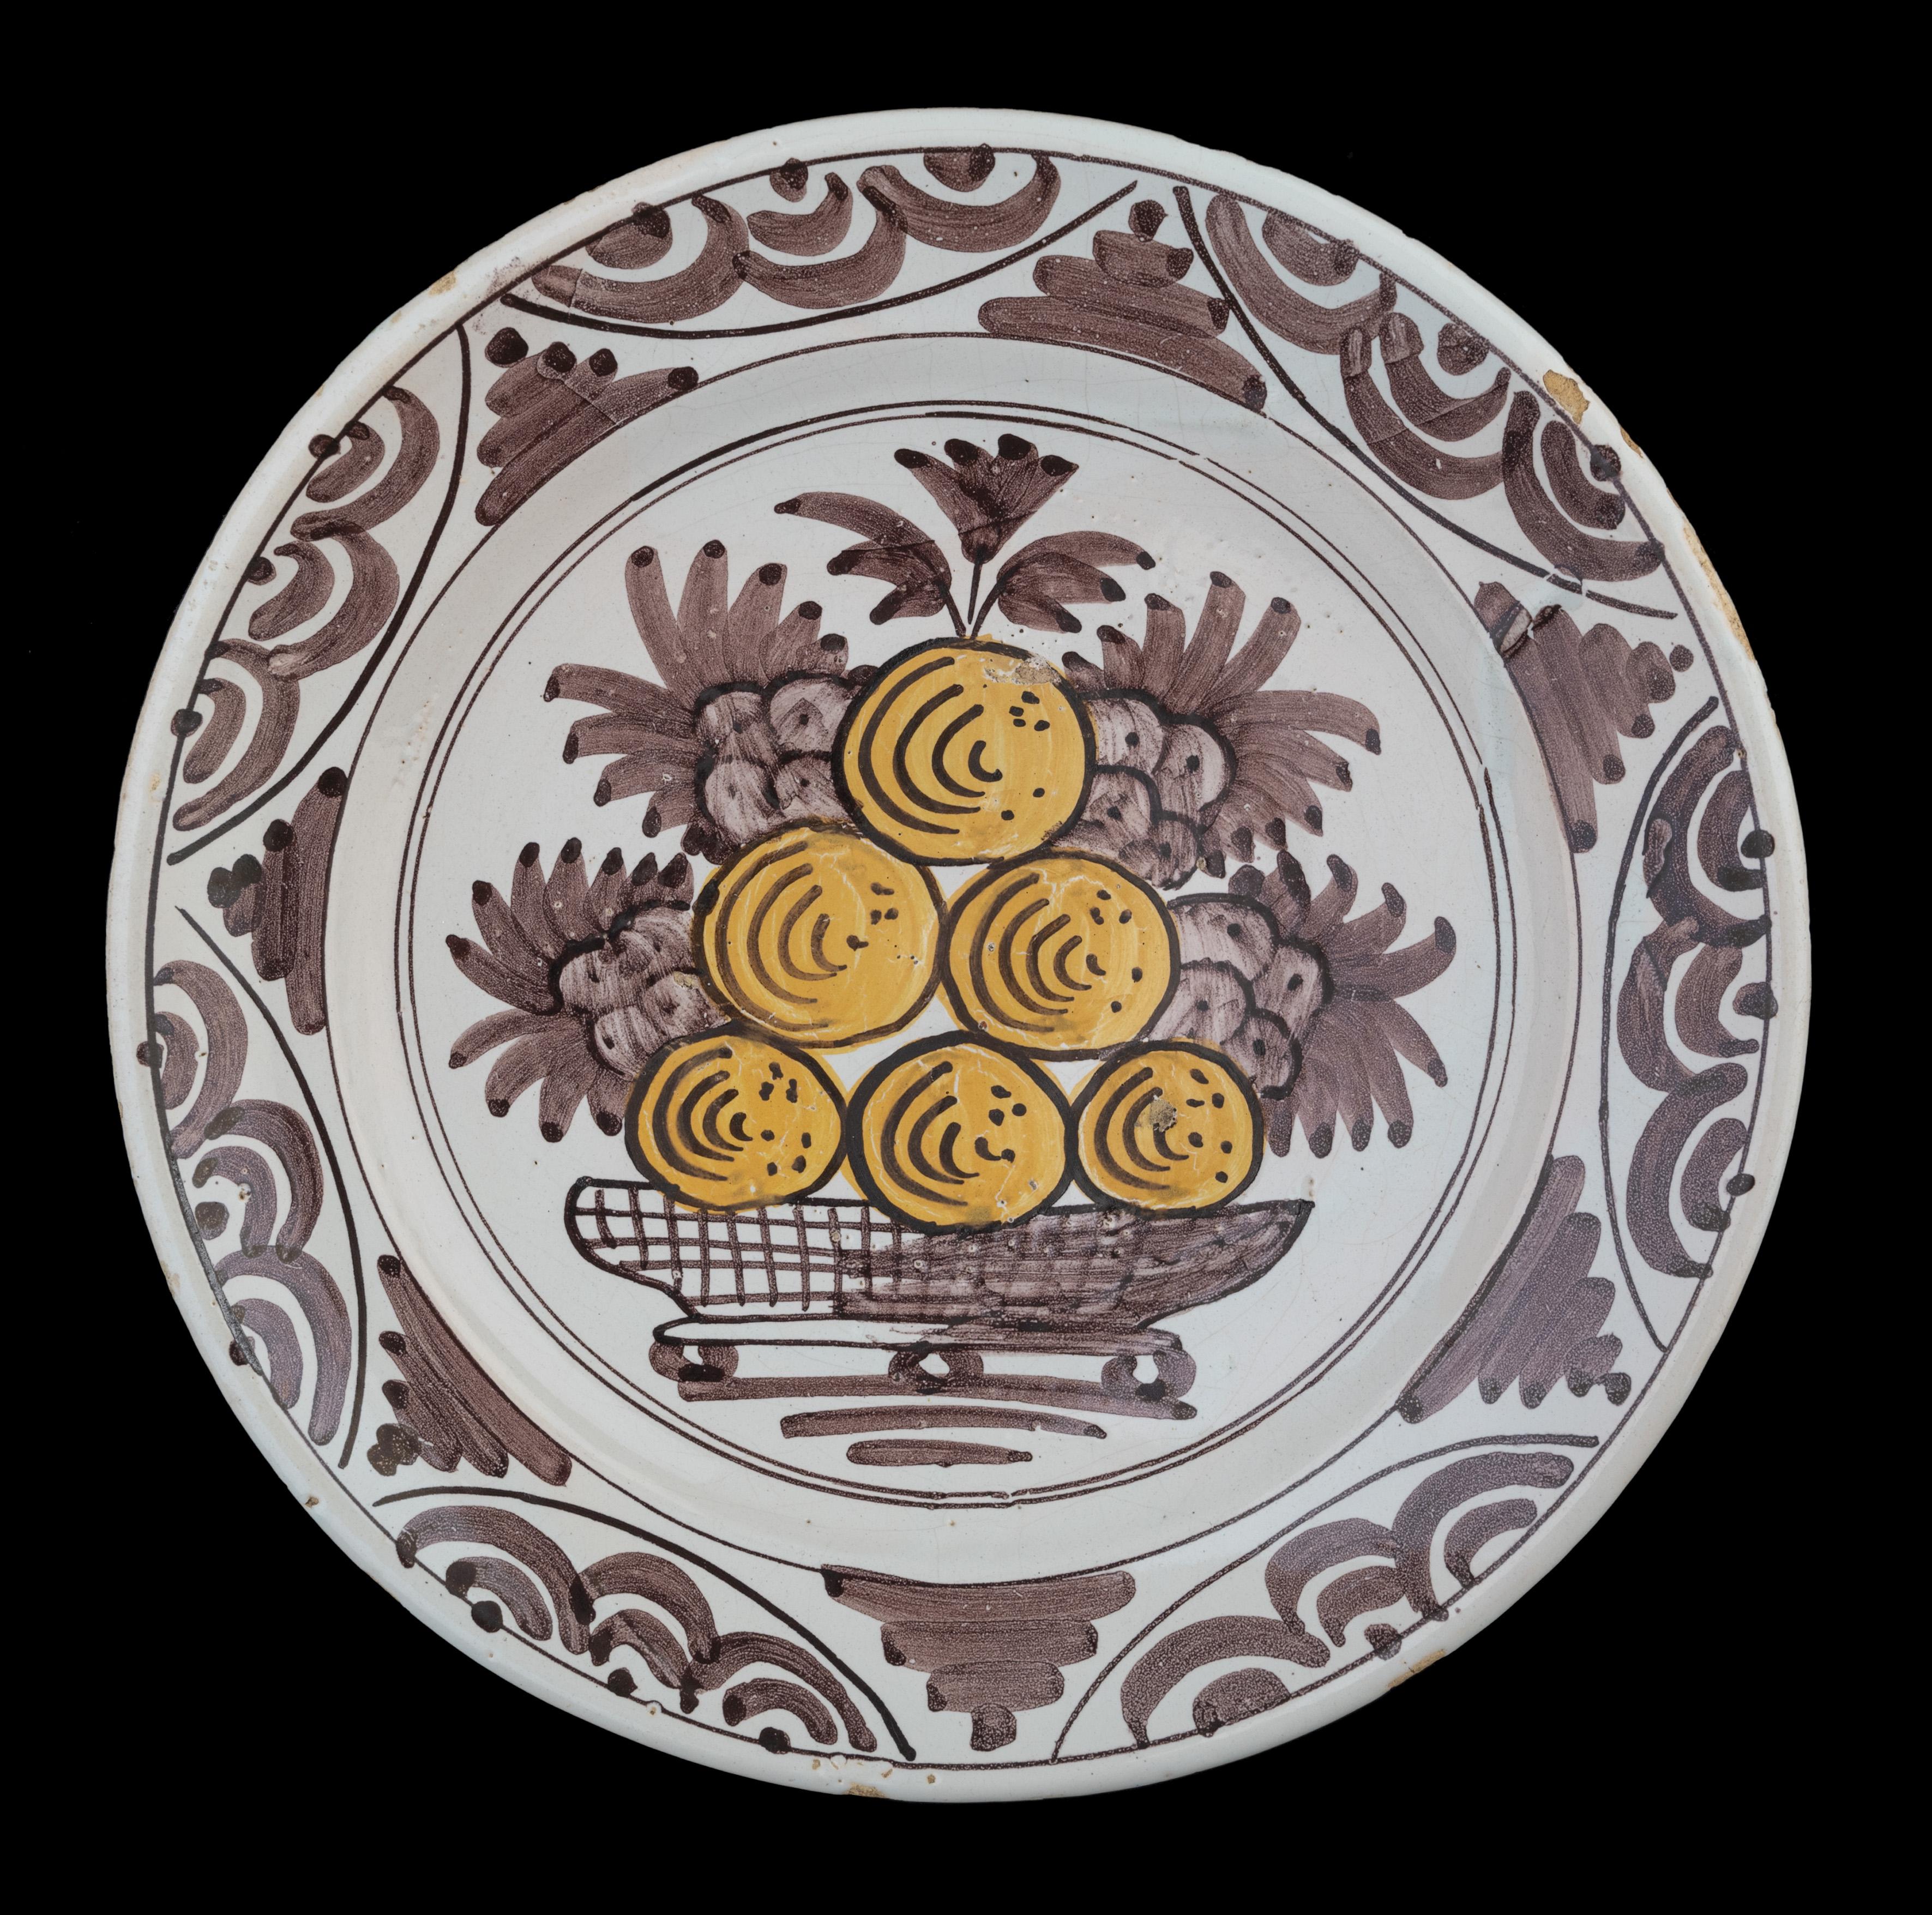 Schale mit Früchten in Violett und Gelb Niederlande, 1660-1700.

Die Schale hat einen ausladenden, leicht erhöhten Flansch und ist in Purpur und Gelb mit einem Fruchtdekor aus Trauben und Äpfeln oder Orangen bemalt, die in einem Doppelkreis